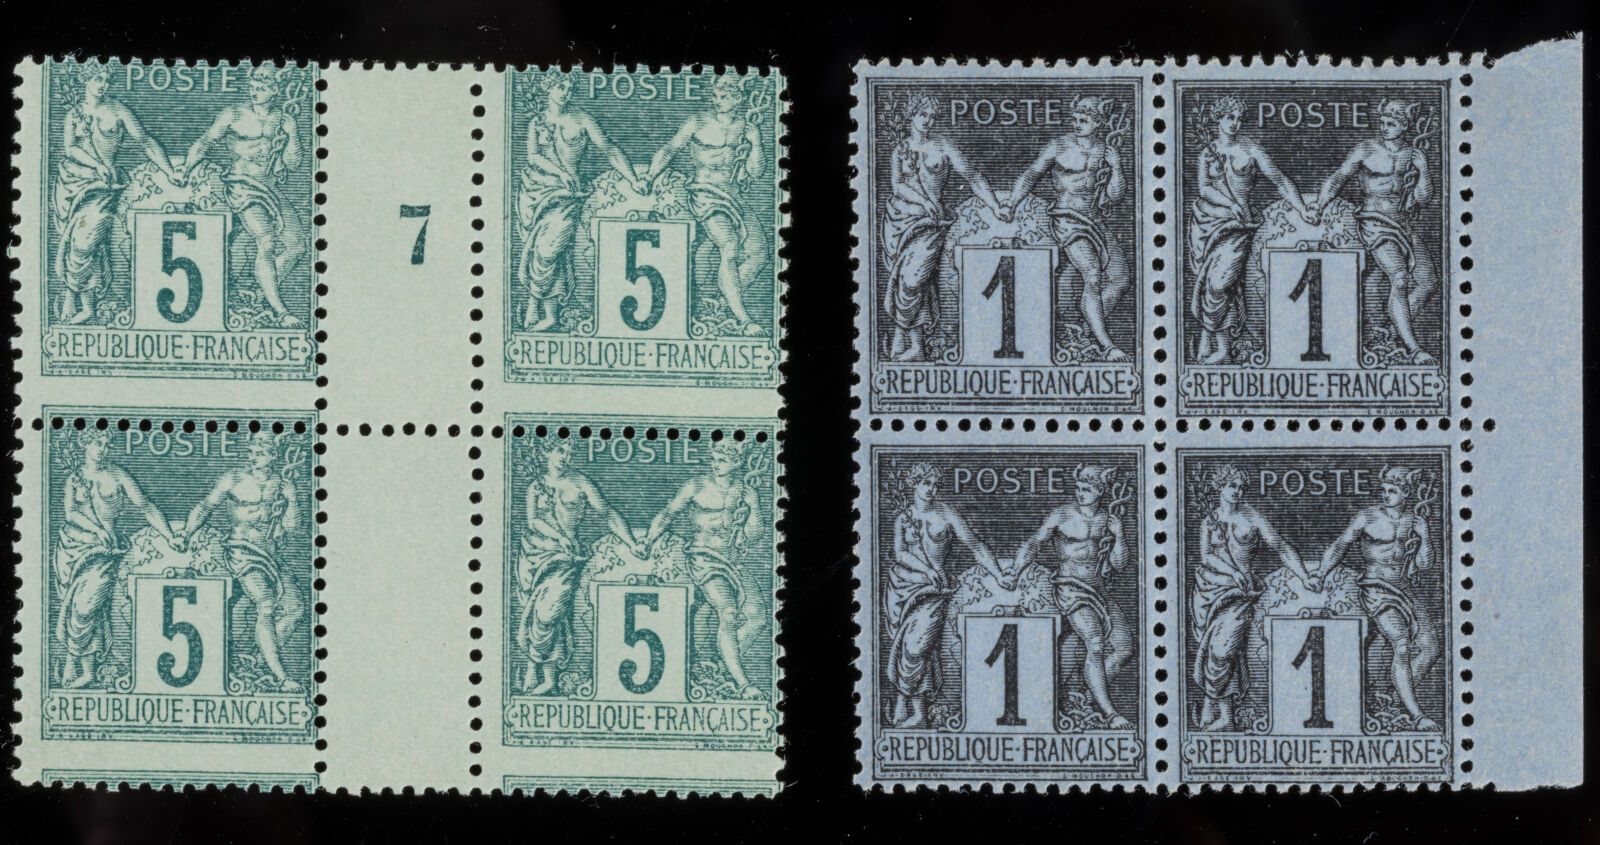 Null Sello N°75 Tipo II - Bloque de 4 sellos : 5c verde con acolchado movido y V&hellip;